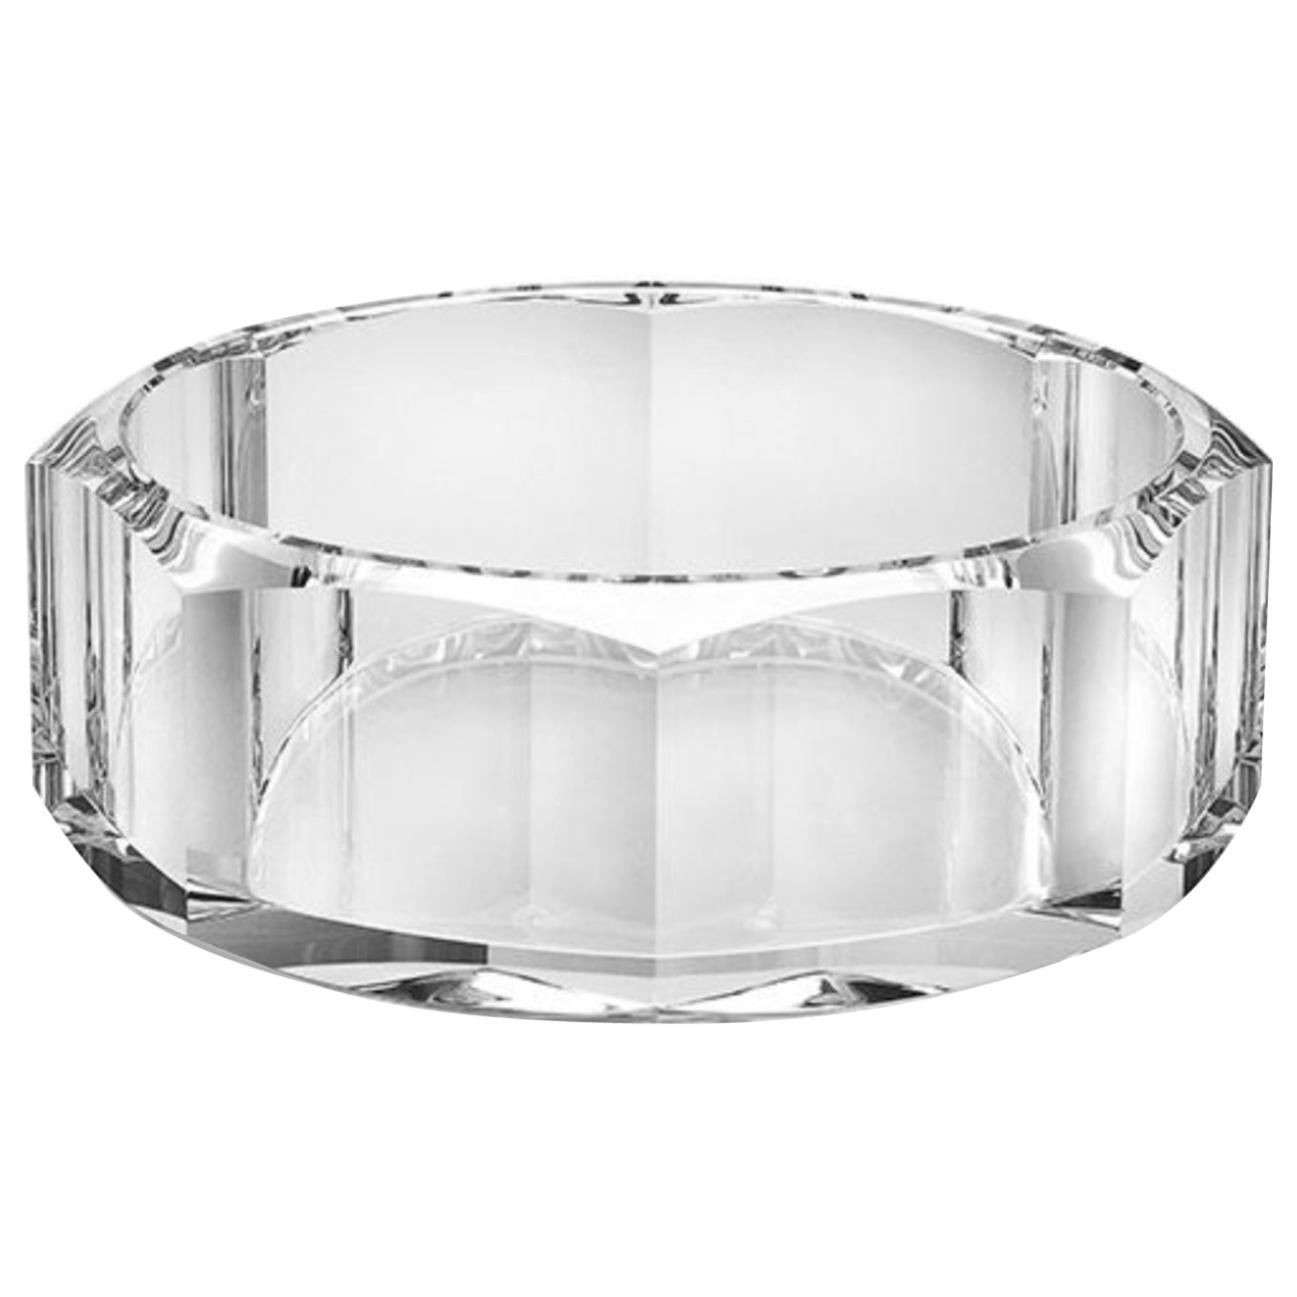 Ralph Lauren Modern Faceted Crystal Bowls